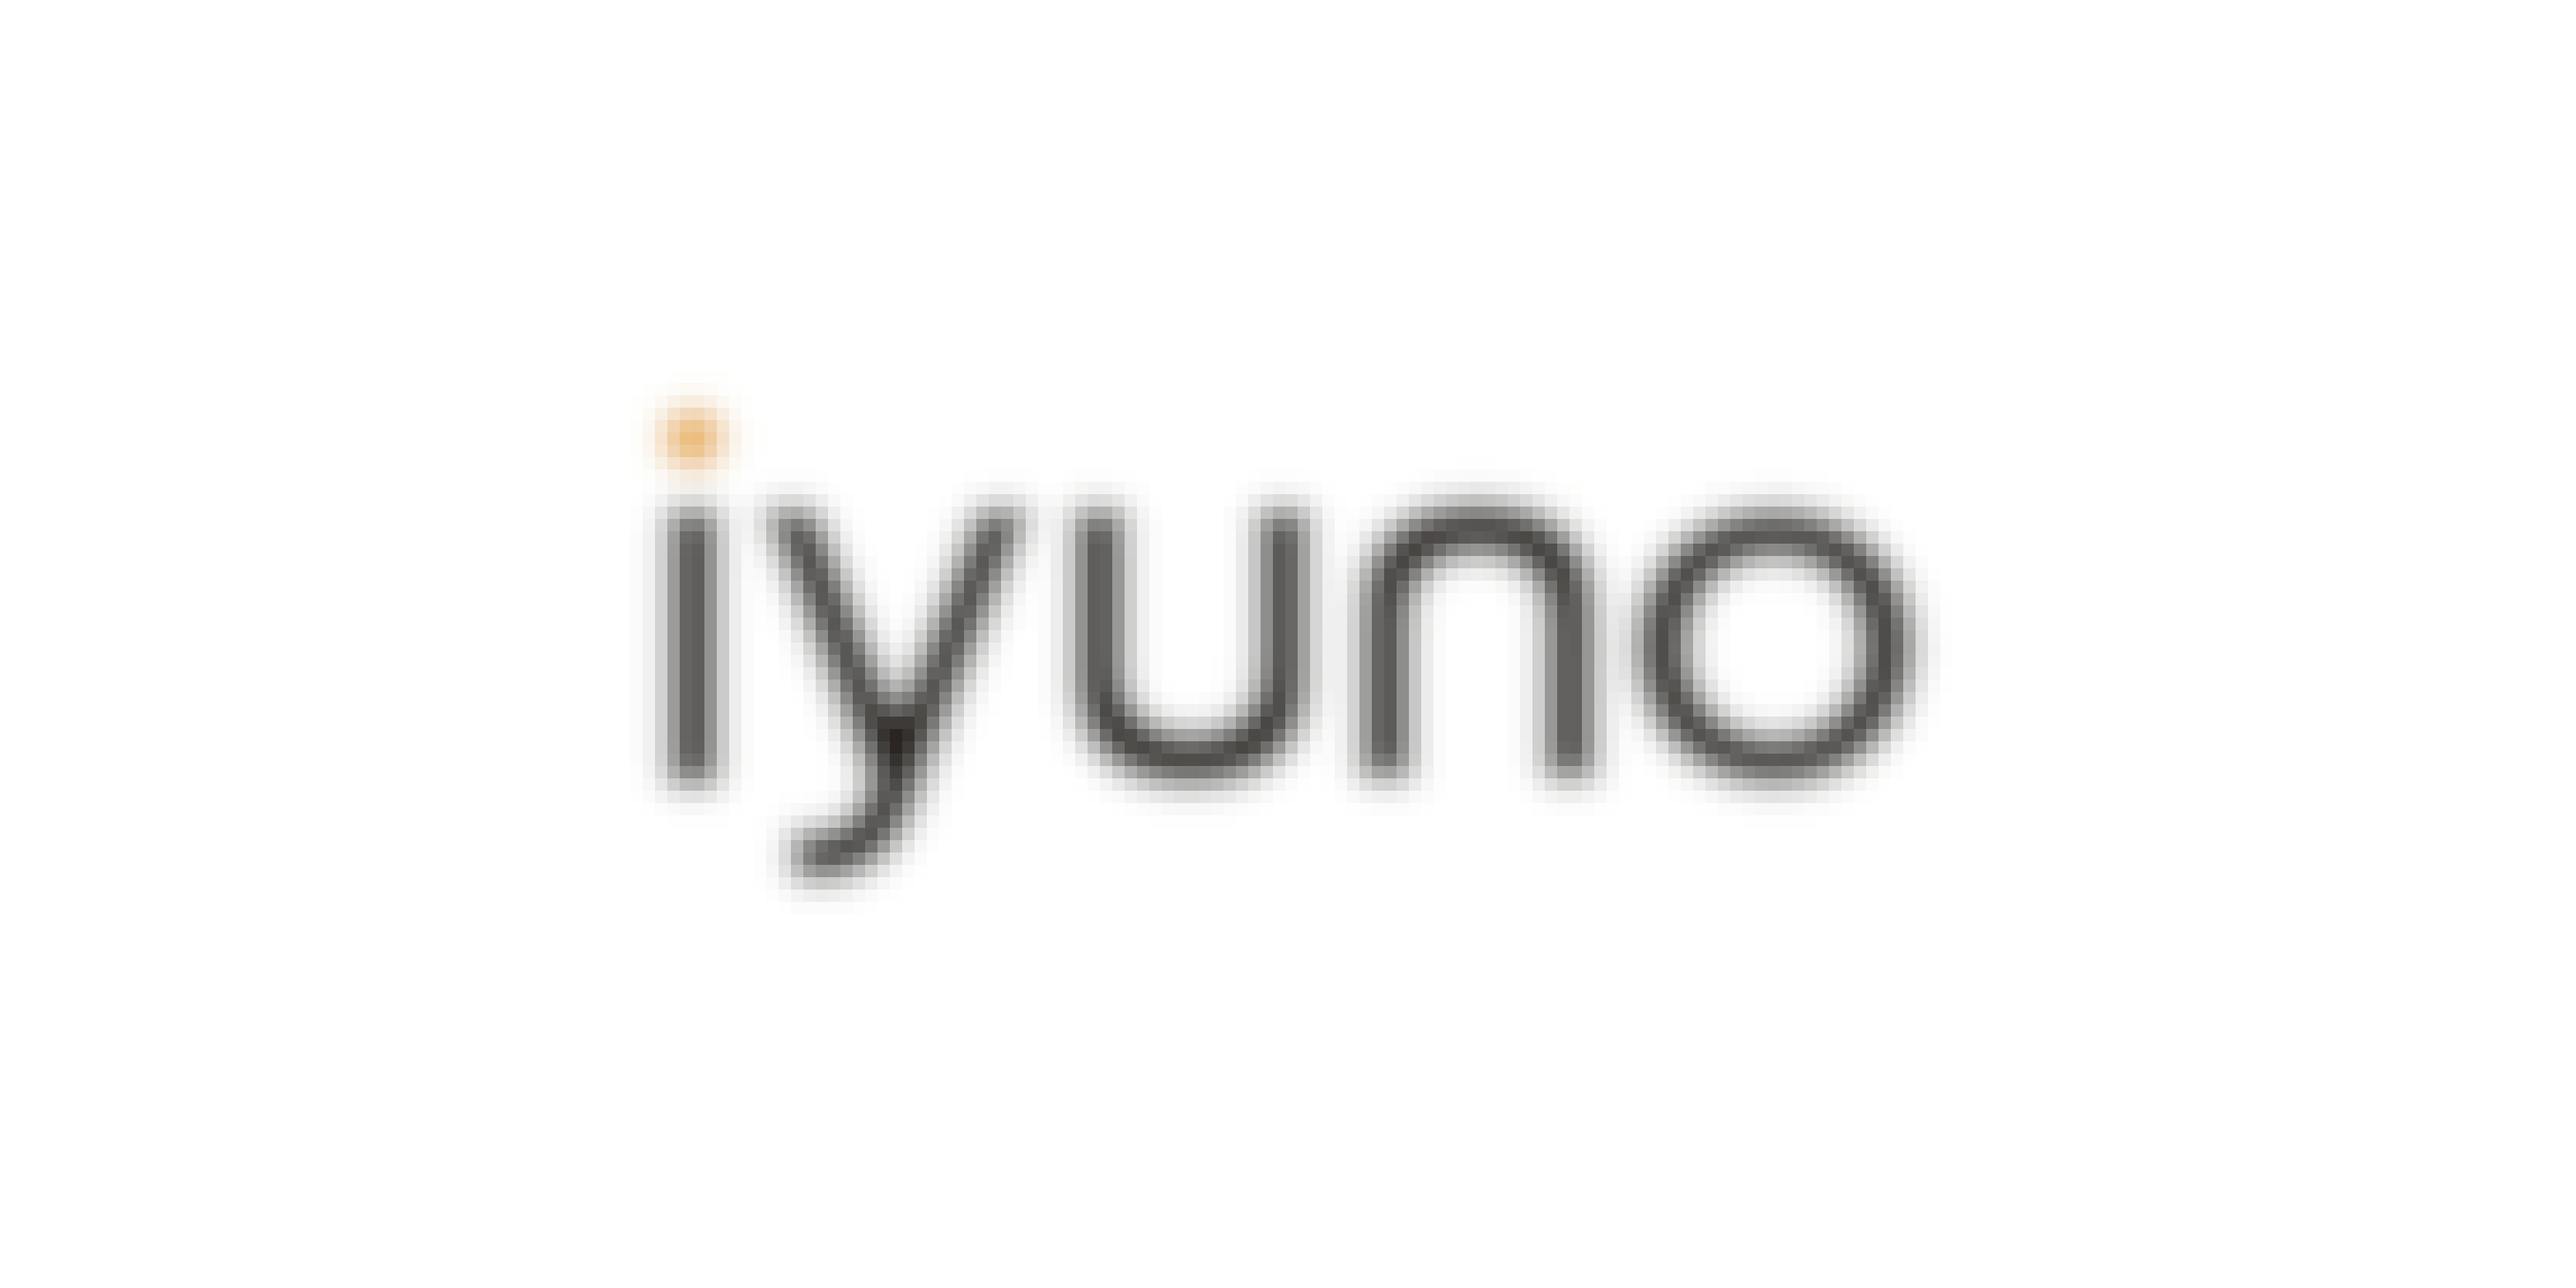 Iyuno Evolves Its Brand Identity